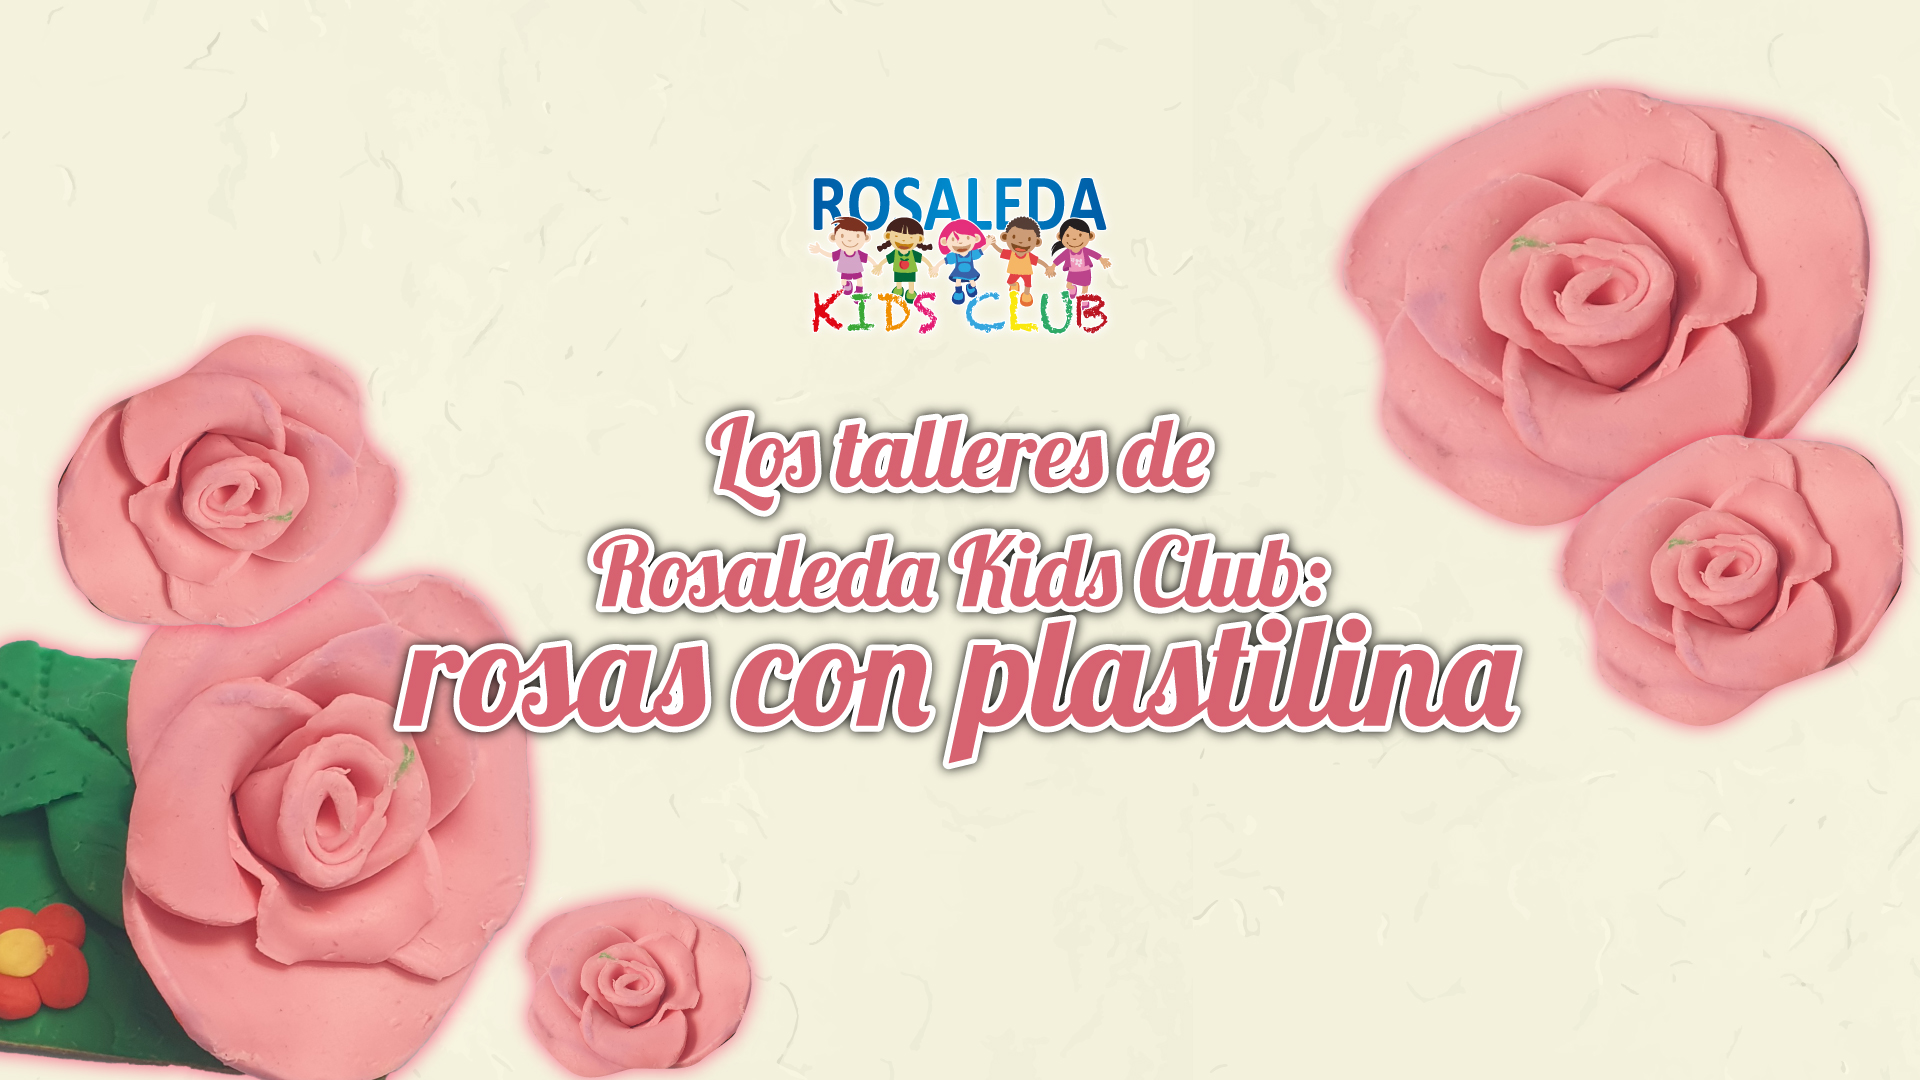 Rosaleda Kids Club: rosas de plastilina